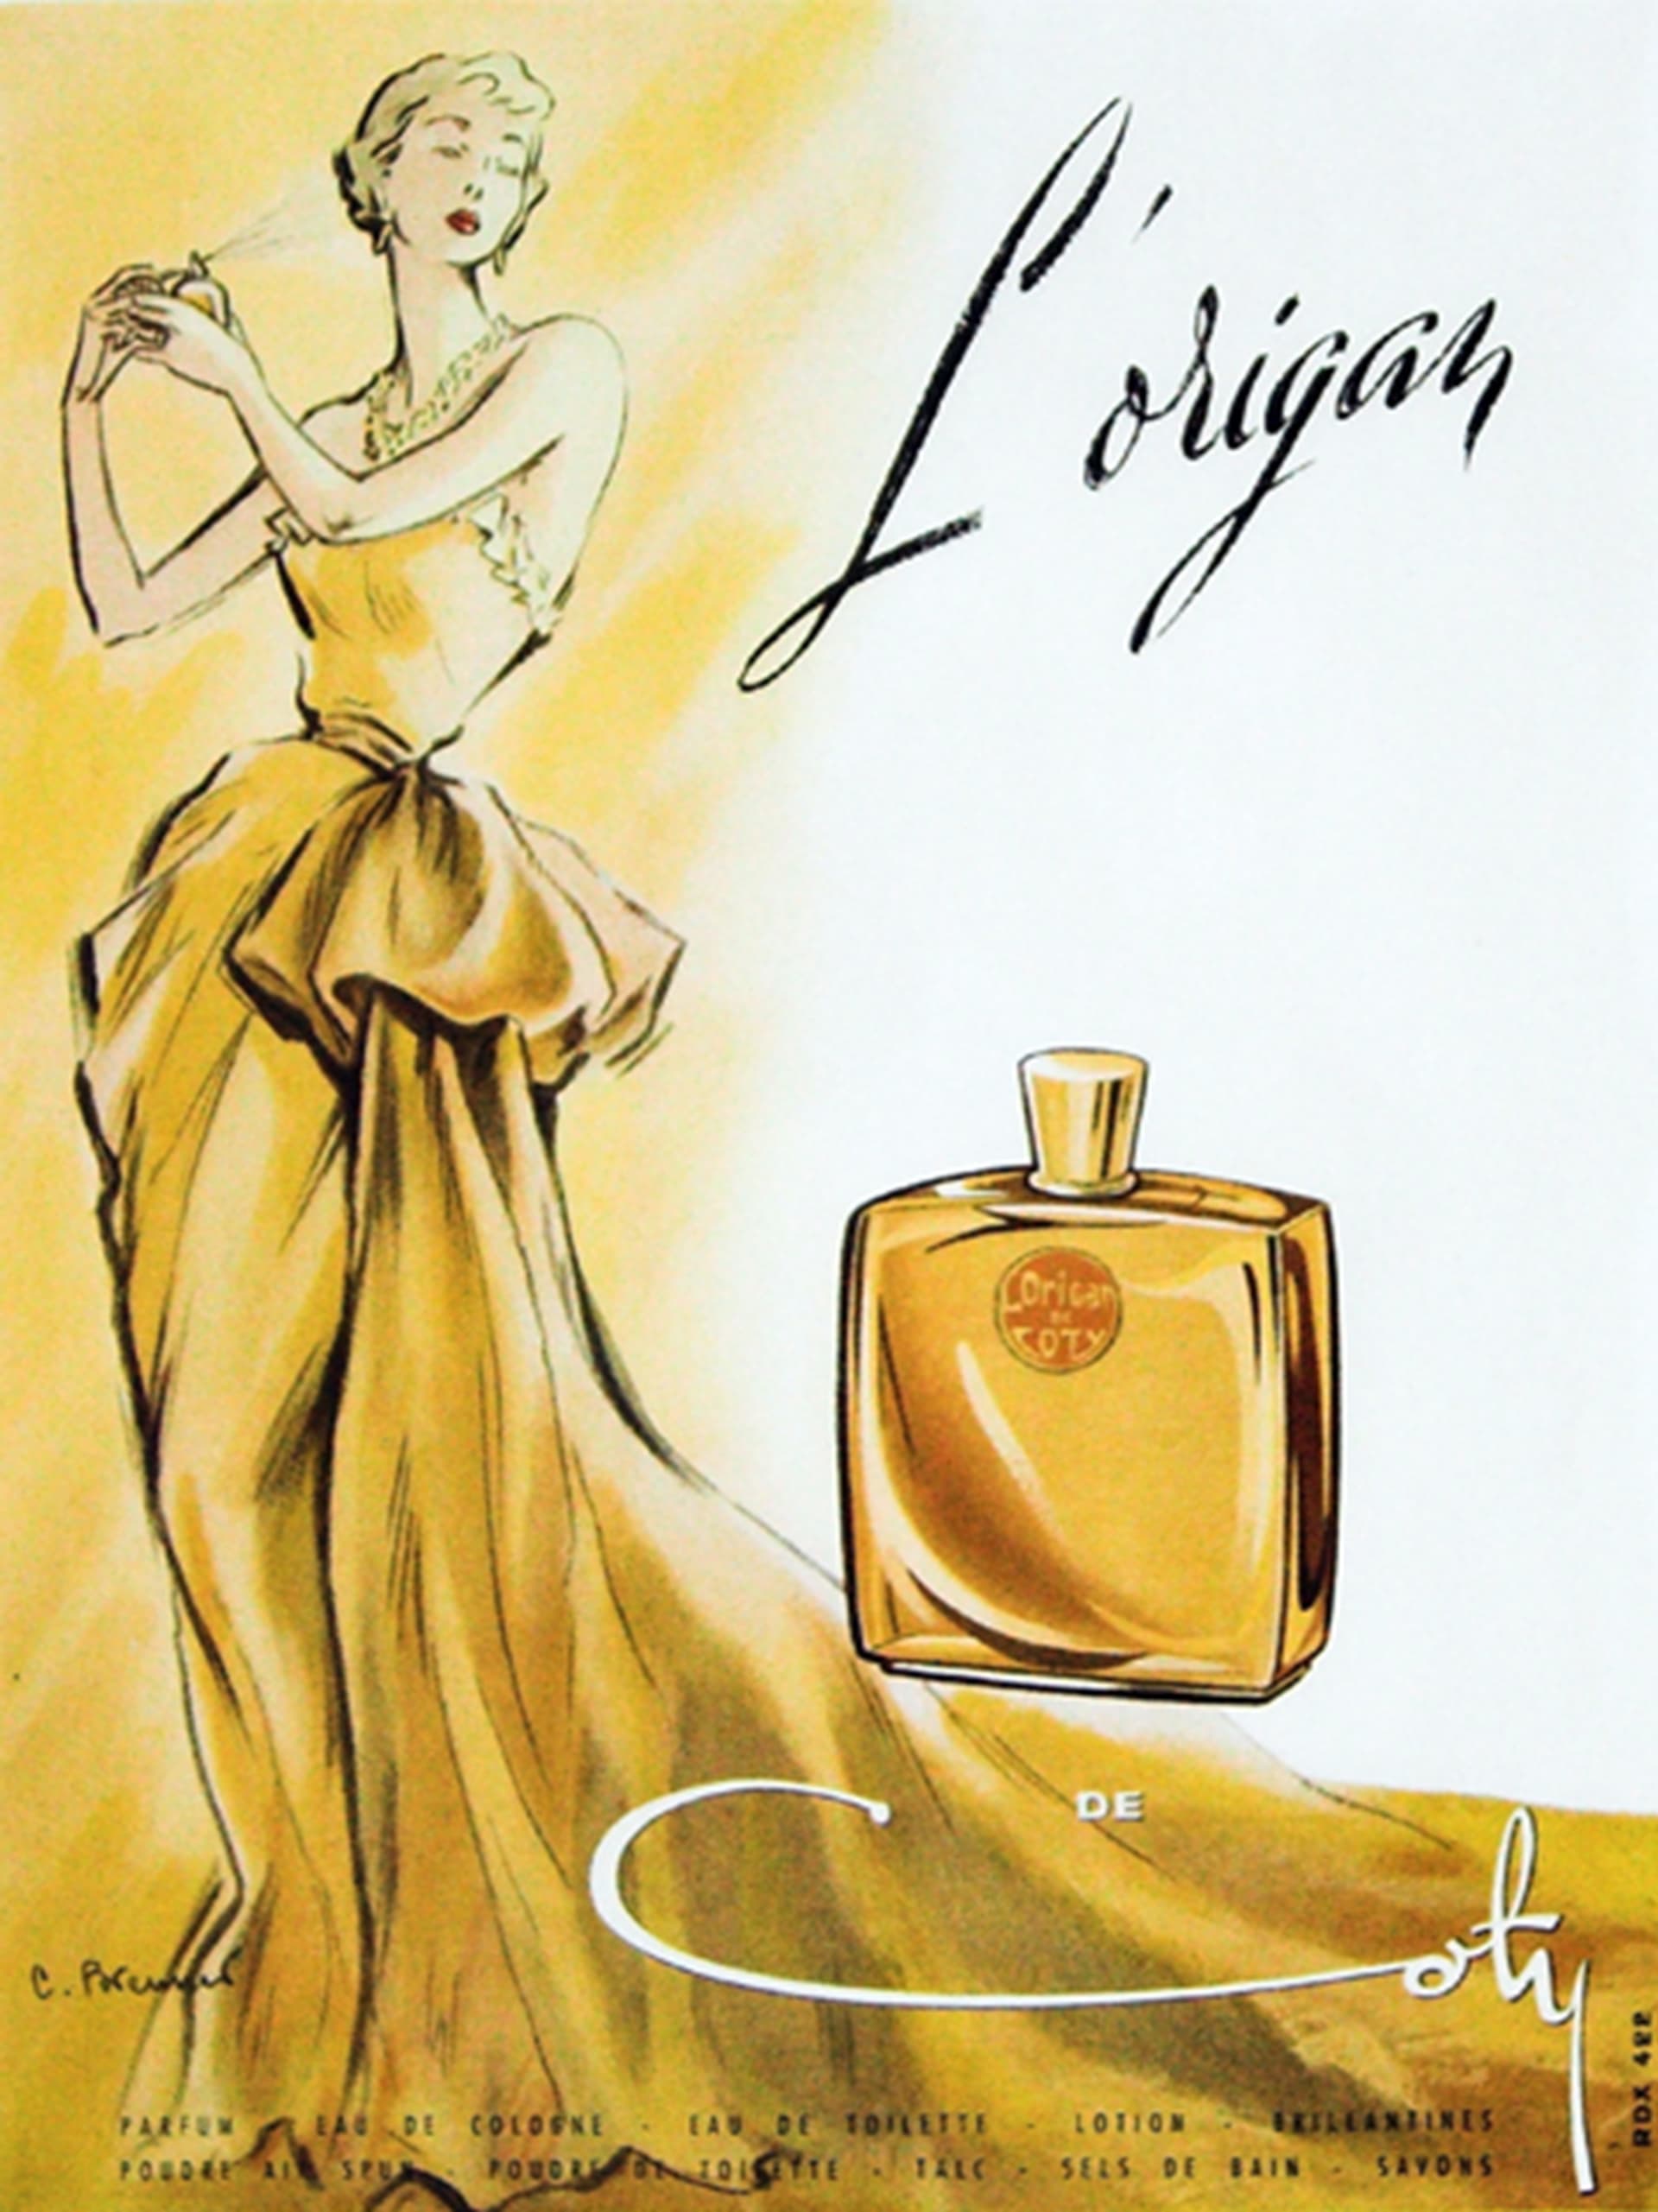 K jednomu z významných zápisů do historie parfémů došlo v roce 1905, kdy byl uveden L’Origan.